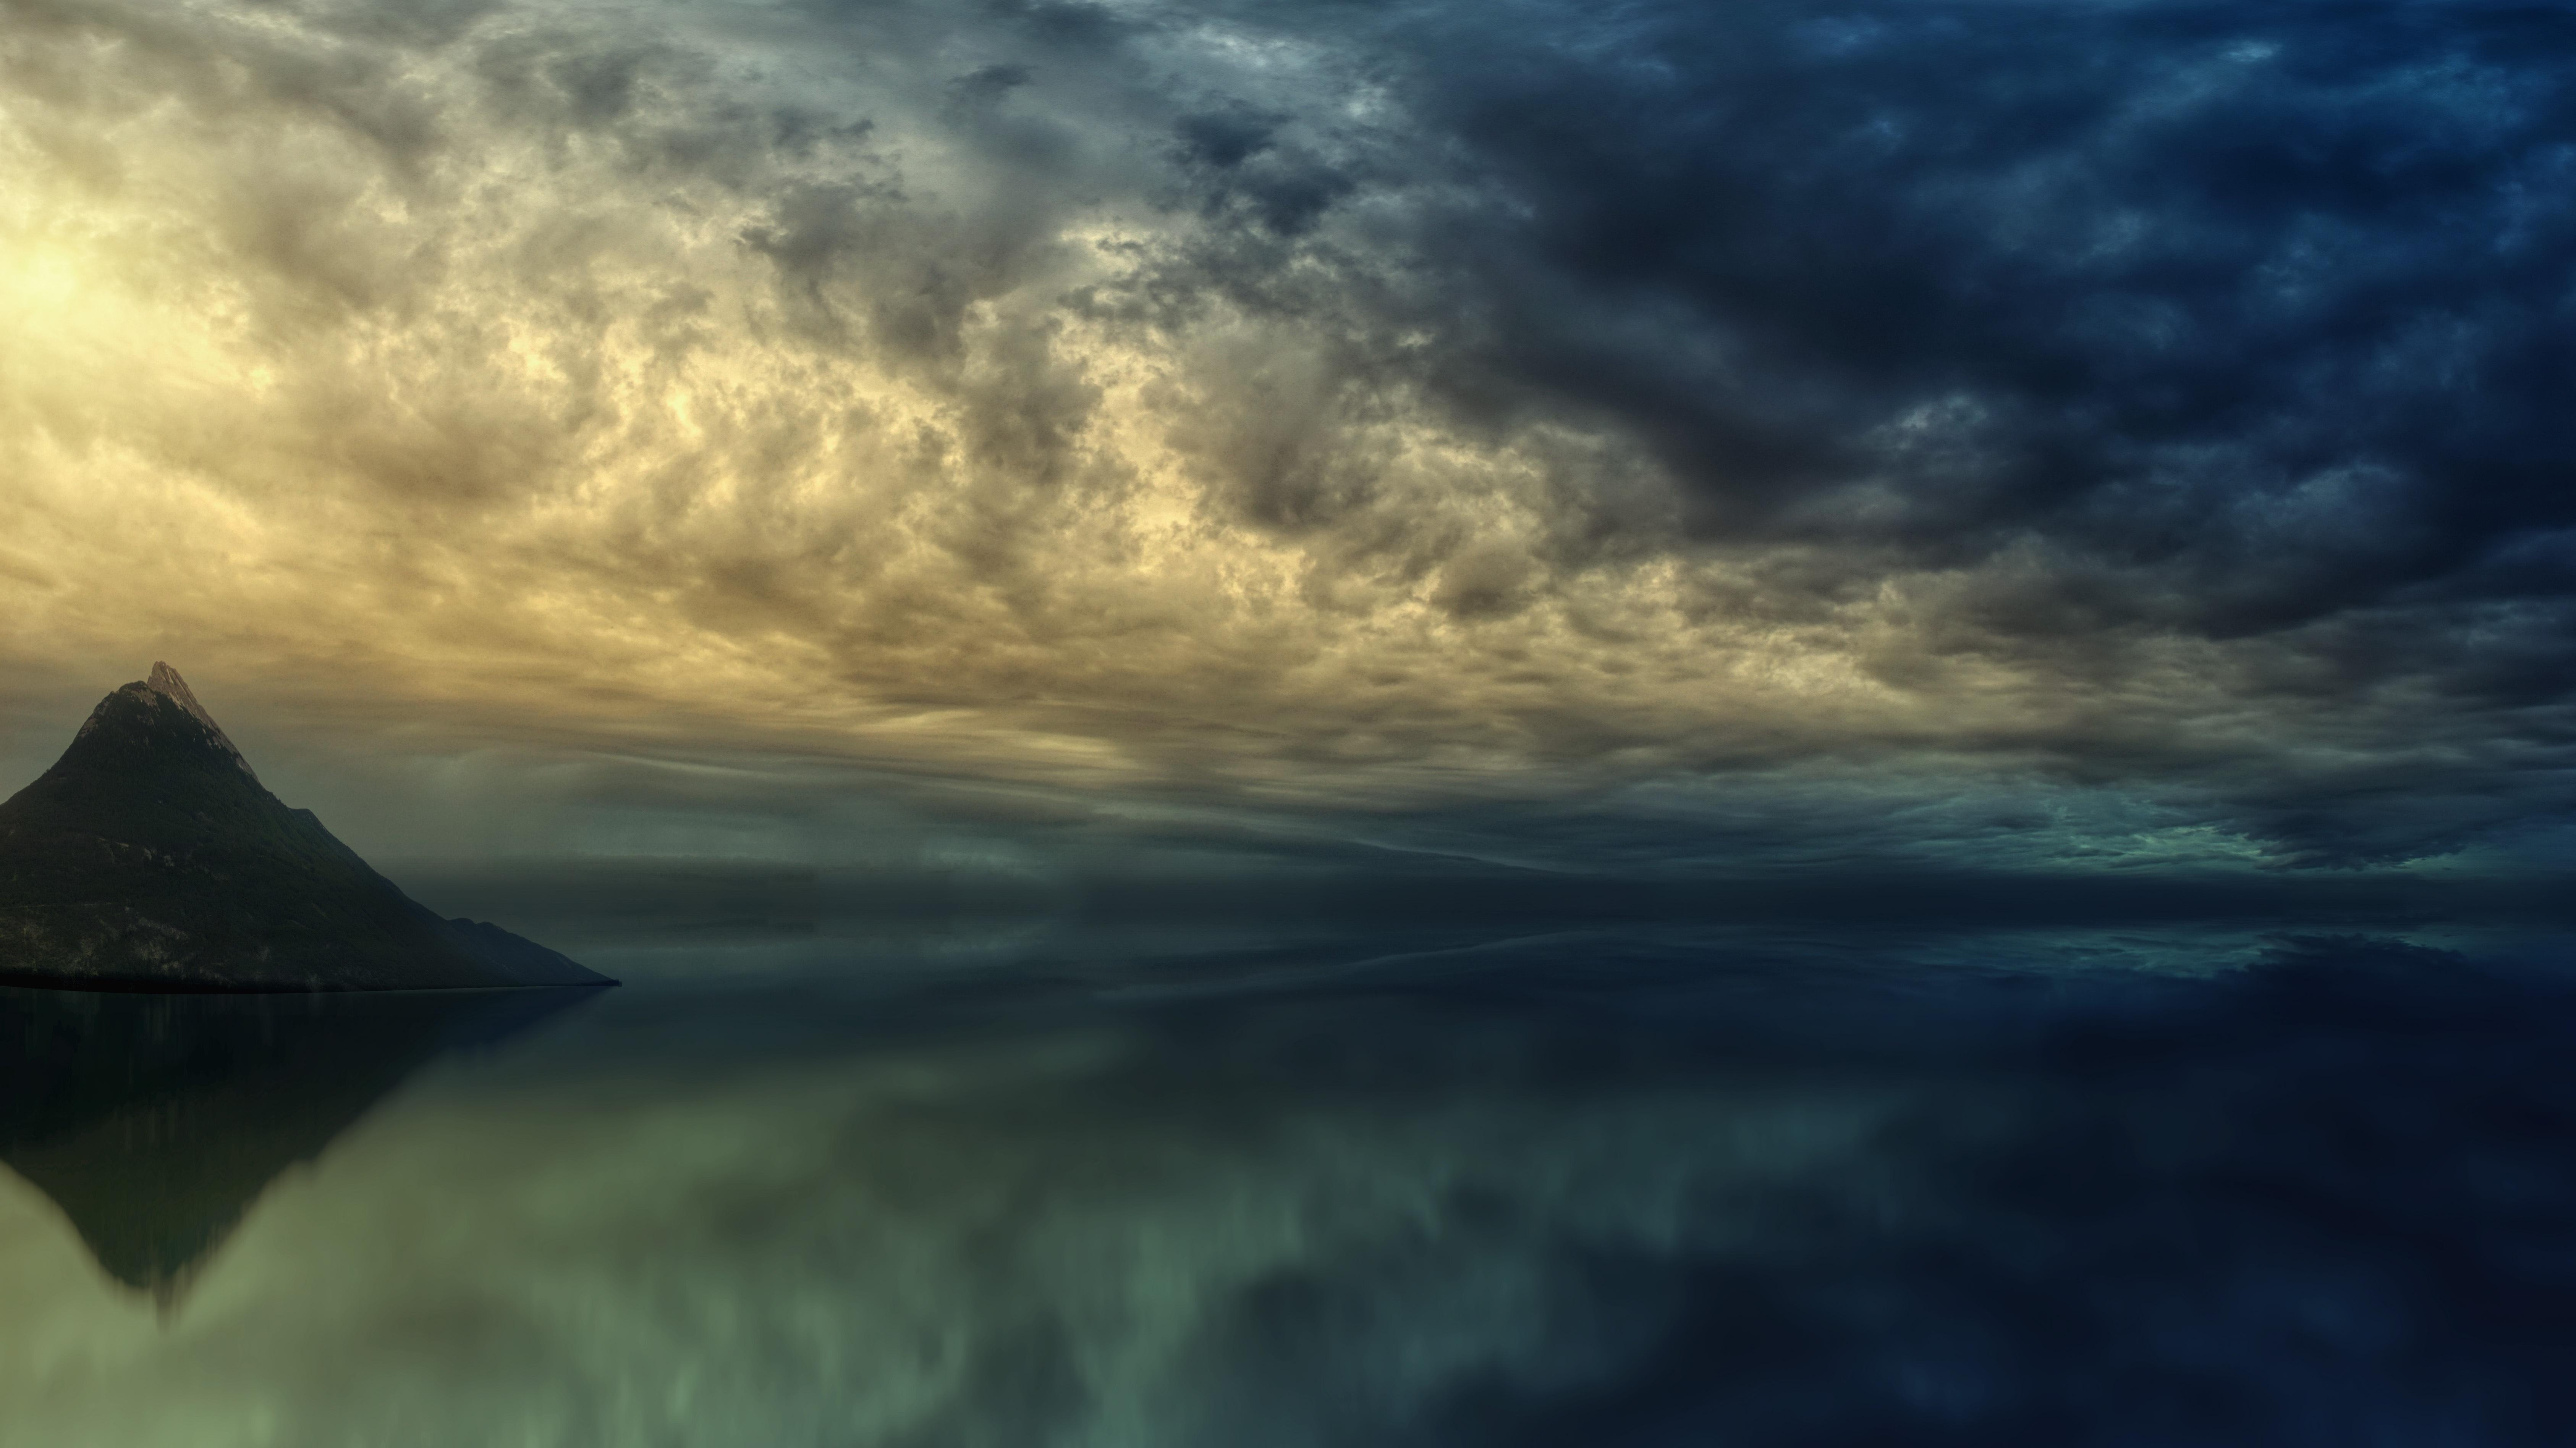 Nature Ocean 4k Ultra HD Wallpaper By Johannes Plenio